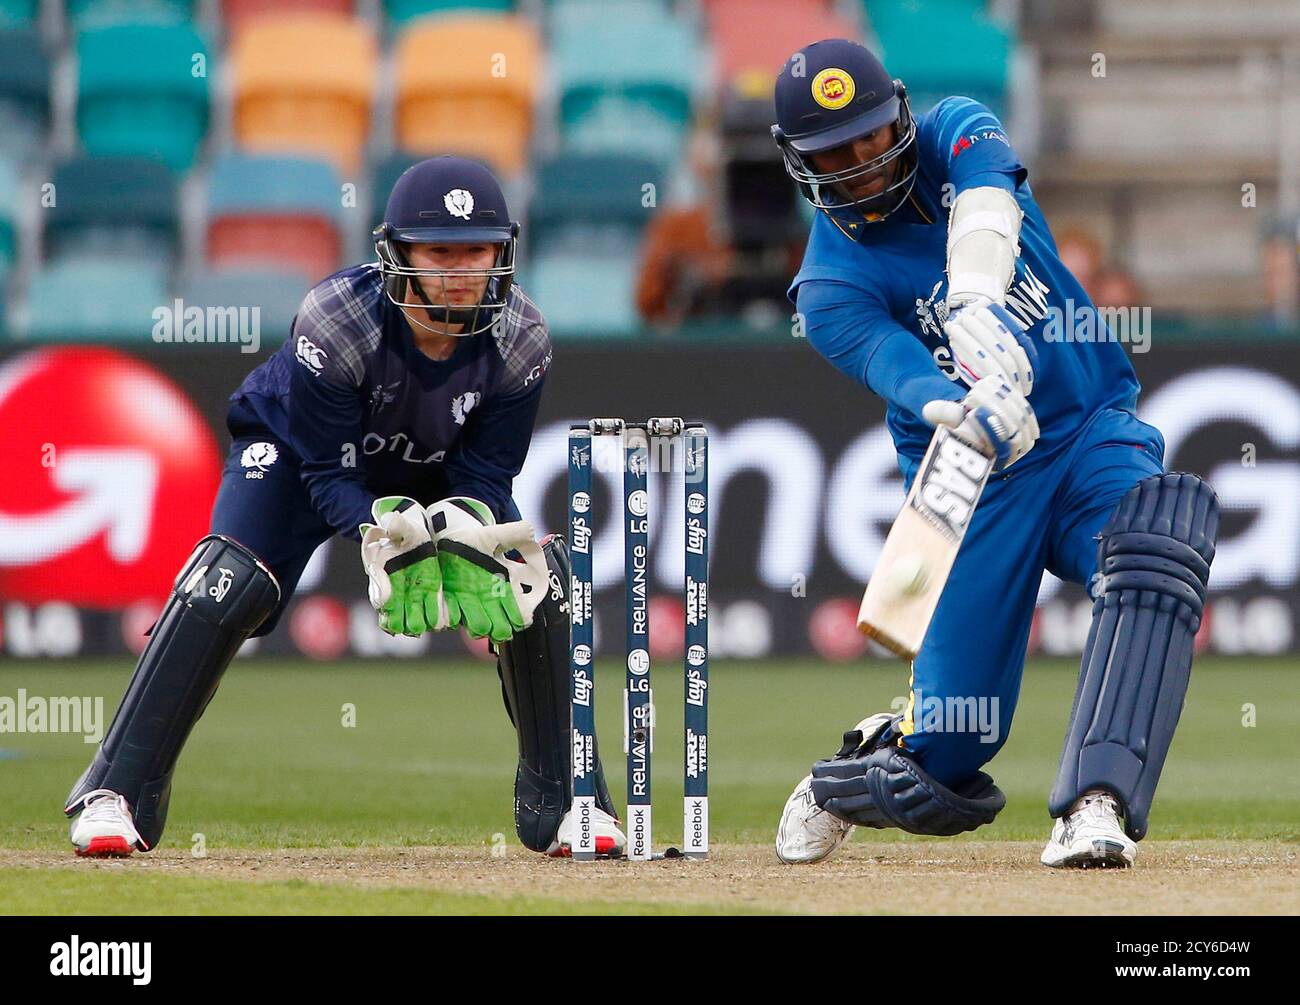 El capitán de Sri Lanka, Angelo golpea el balón durante seis carreras, mientras el maleterista de Escocia, Matt Cross (L), observa durante su partido de la Copa de Cricket en